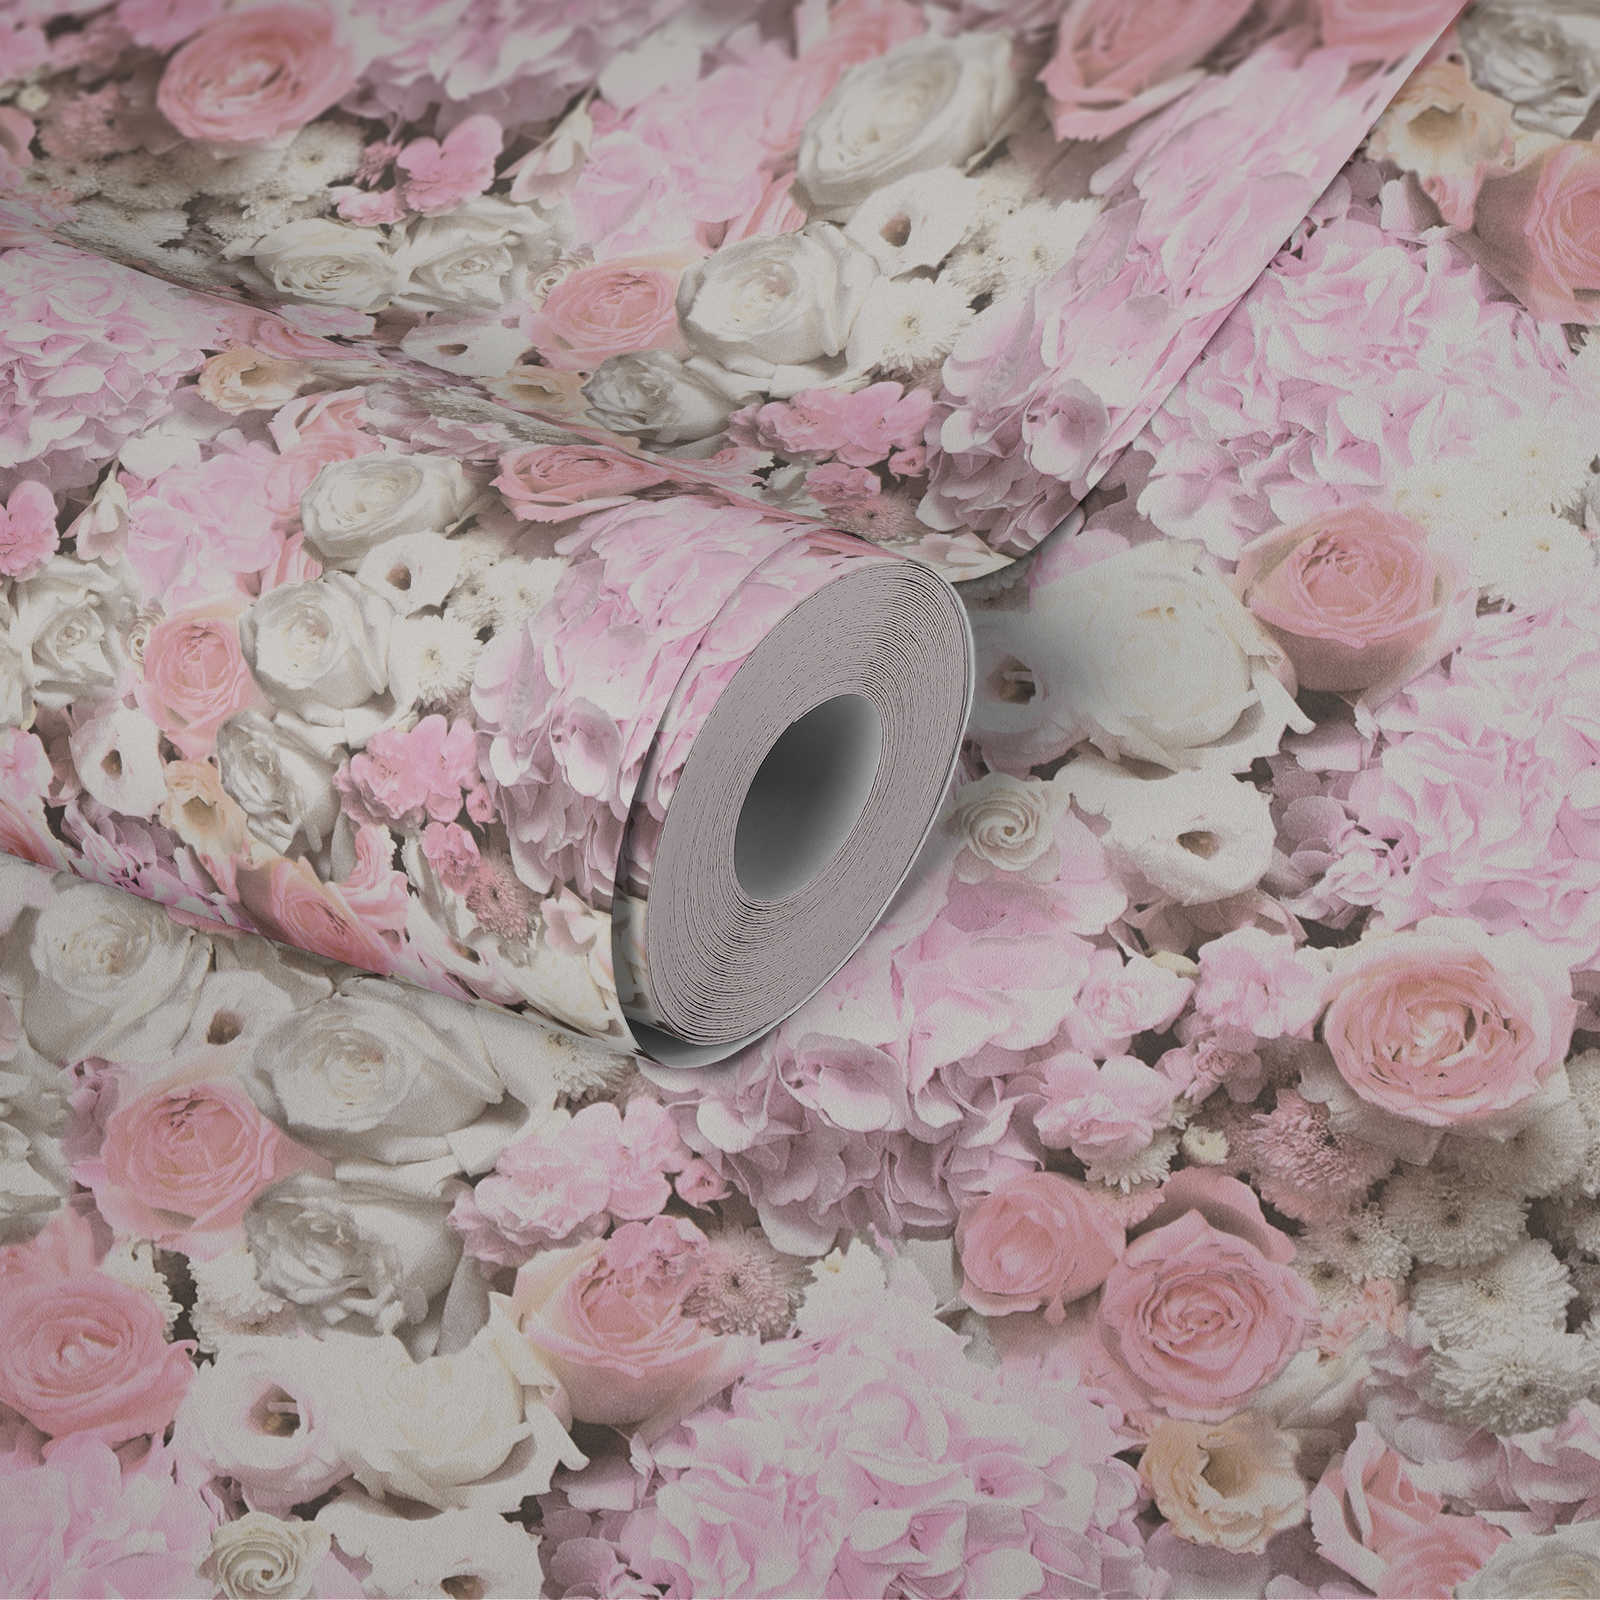             papel pintado con motivos de rosas y flores - rosa, blanco
        